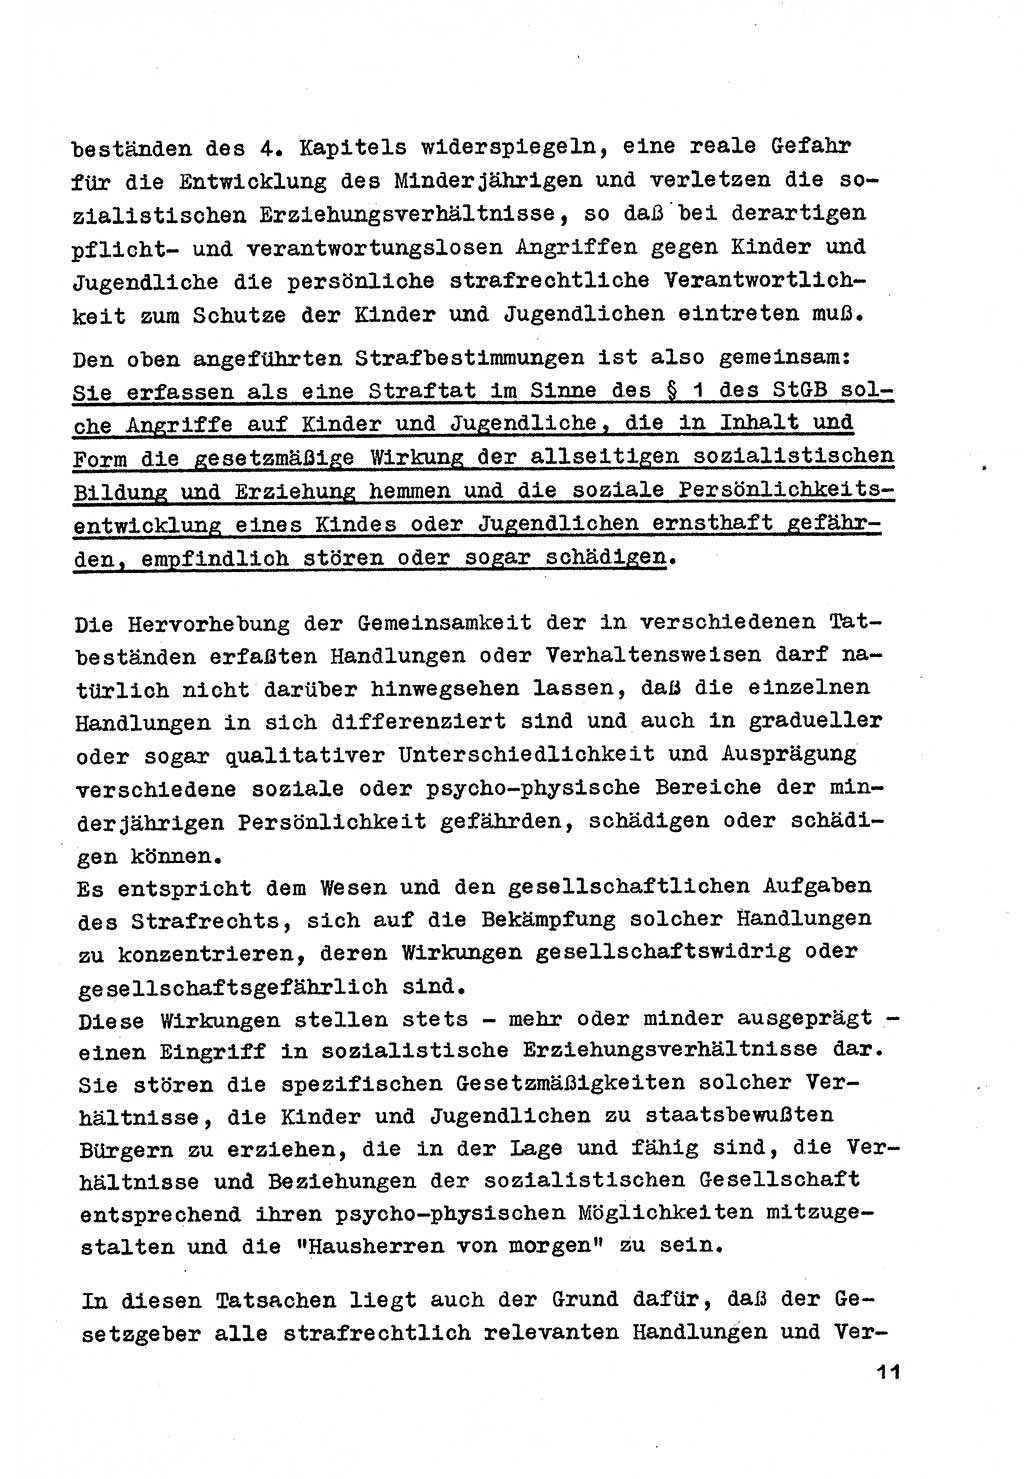 Strafrecht der DDR (Deutsche Demokratische Republik), Besonderer Teil, Lehrmaterial, Heft 4 1969, Seite 11 (Strafr. DDR BT Lehrmat. H. 4 1969, S. 11)